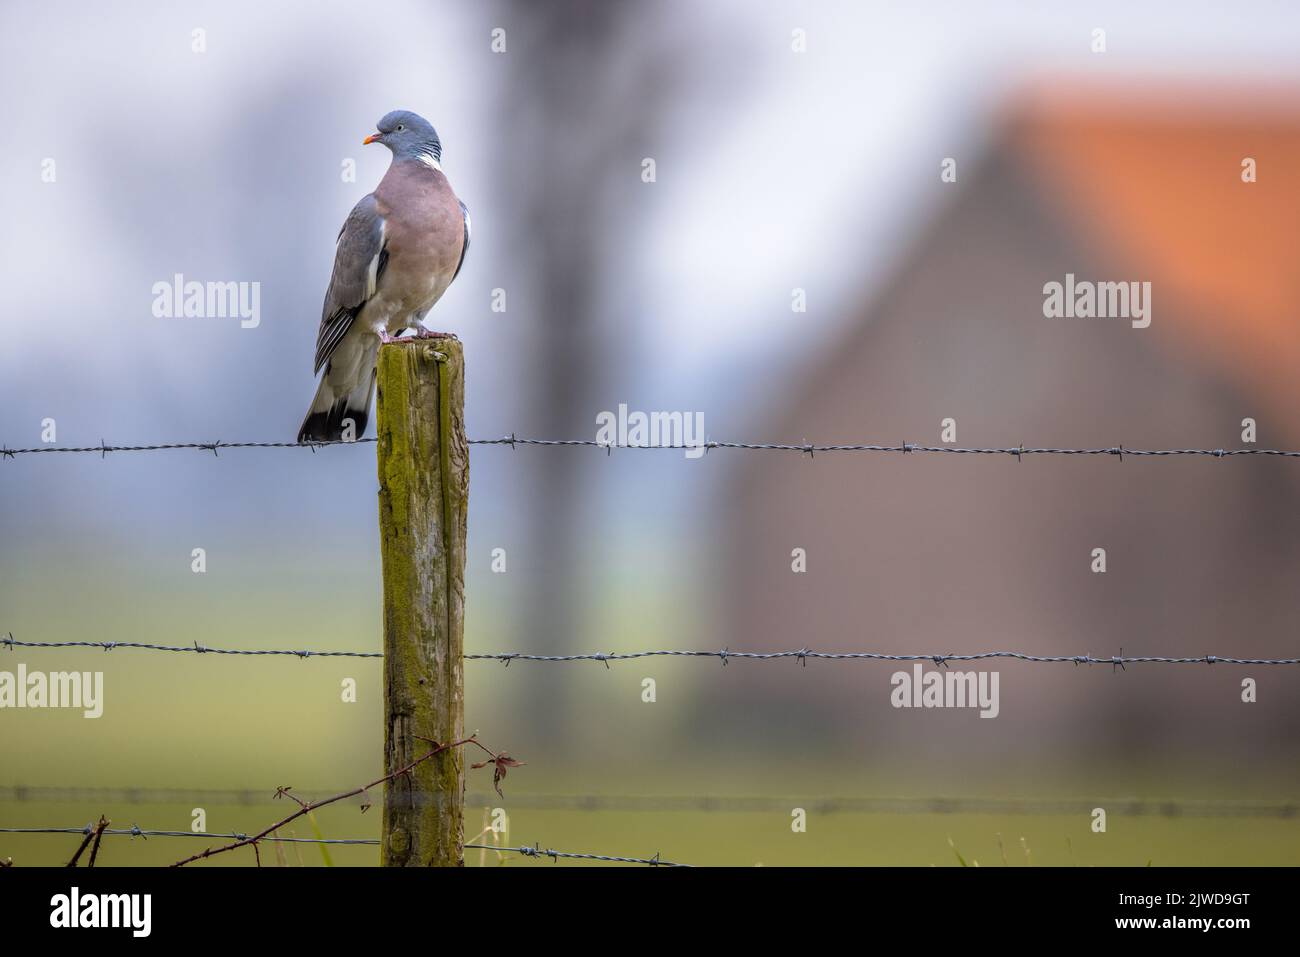 Pigeon de bois (Columba Palumbus) perché sur une clôture avec une grange de ferme floue en arrière-plan. Les pigeons de bois semblent avoir une préférence pour les petits agriculteurs Banque D'Images